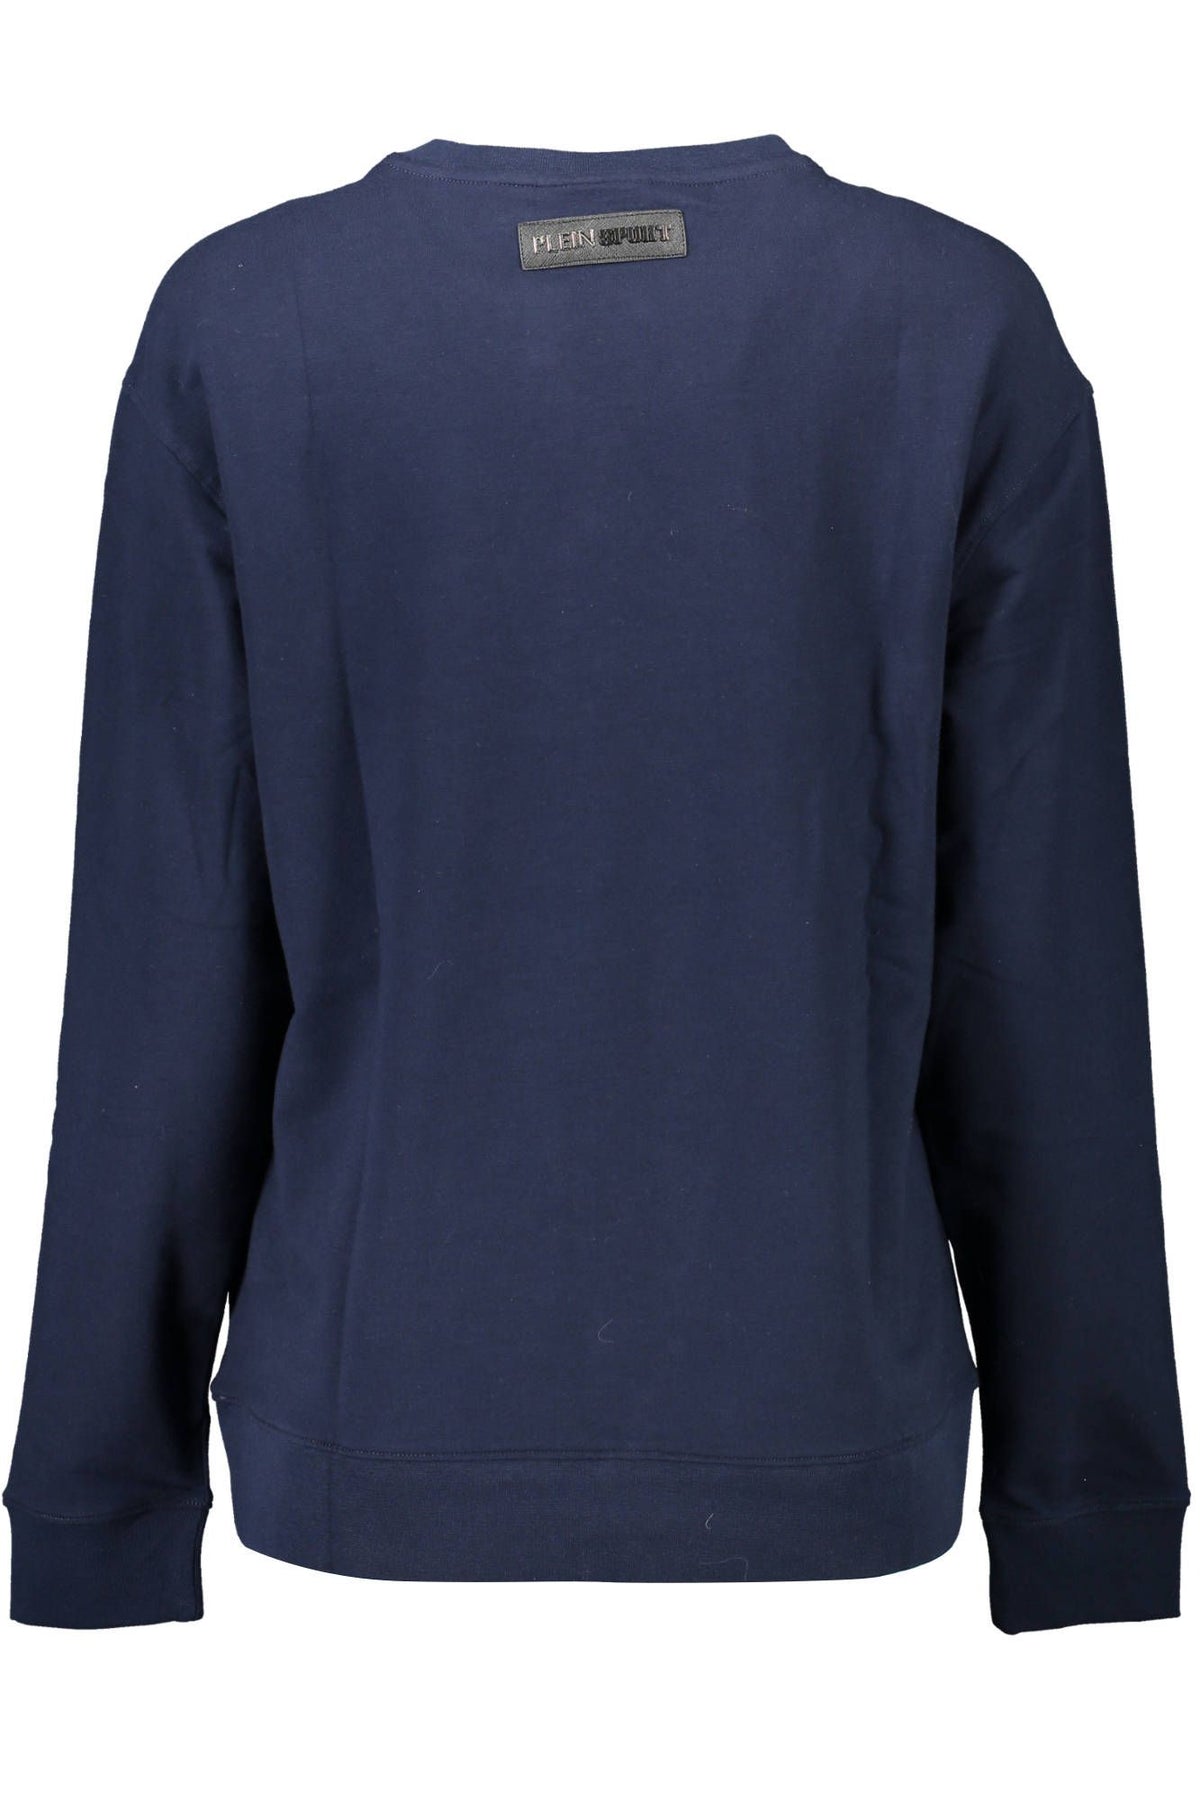 Plein Sport – Schickes, blaues Langarm-Sweatshirt mit Logo